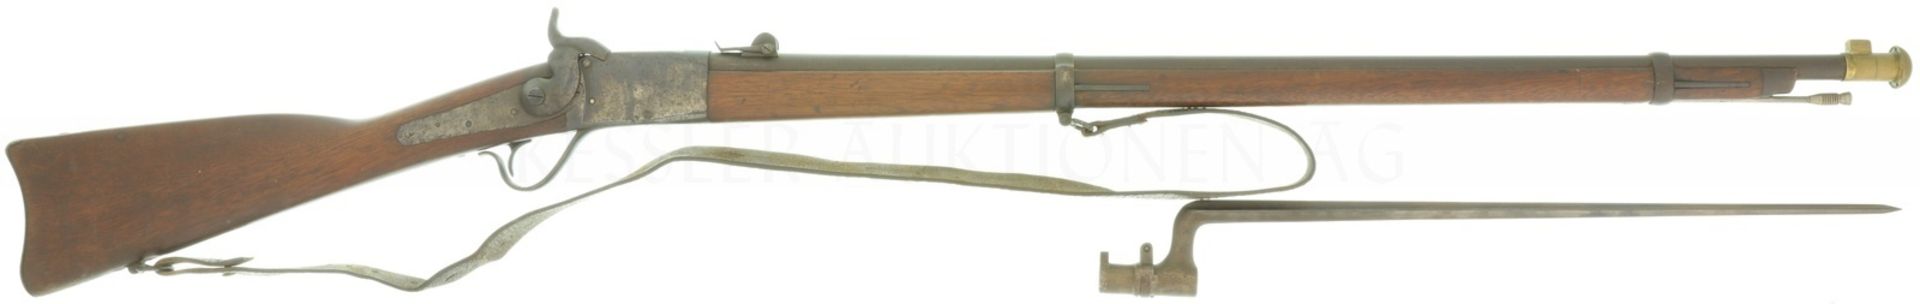 Geniegewehr, Peabody 1867, Kal. 10.4mmRZ